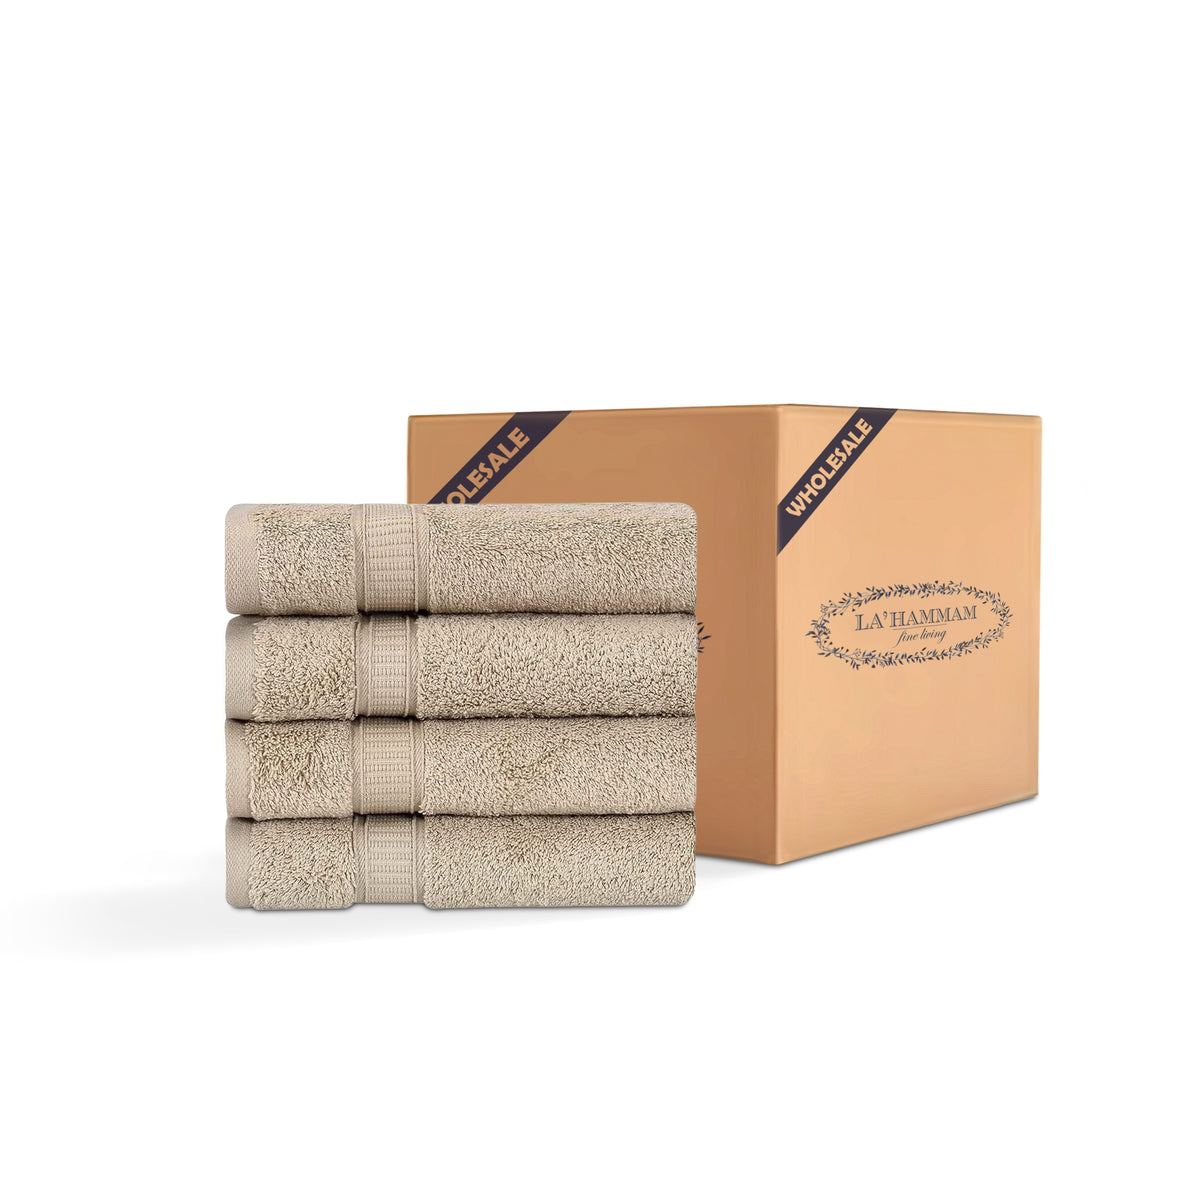 4 Piece Hand Towel Set - 24 Set Case Box